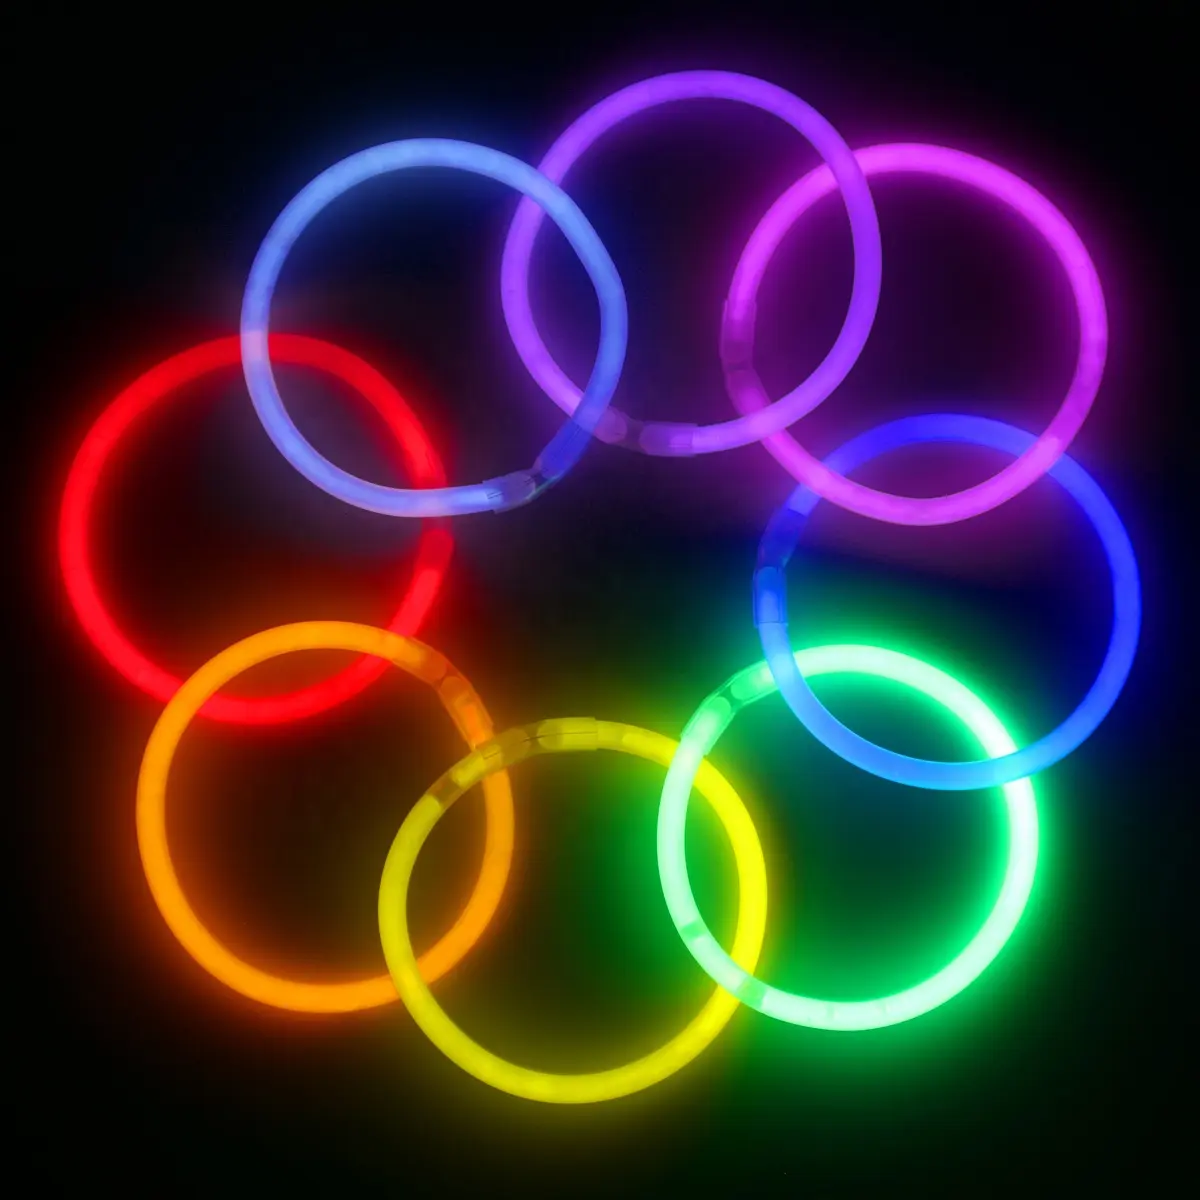 Regali per feste braccialetto a bagliore con bastoncino luminoso colorato a bagliore monocolore